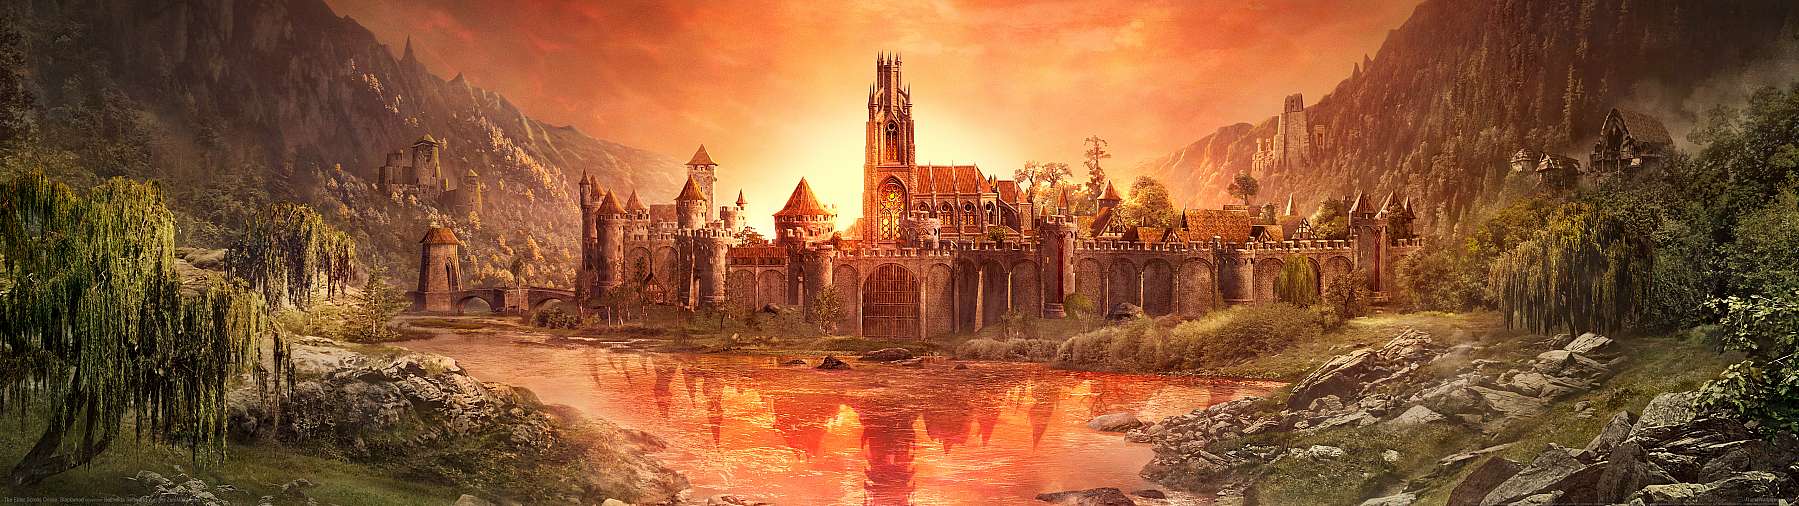 The Elder Scrolls Online: Blackwood superwide fond d'cran 01